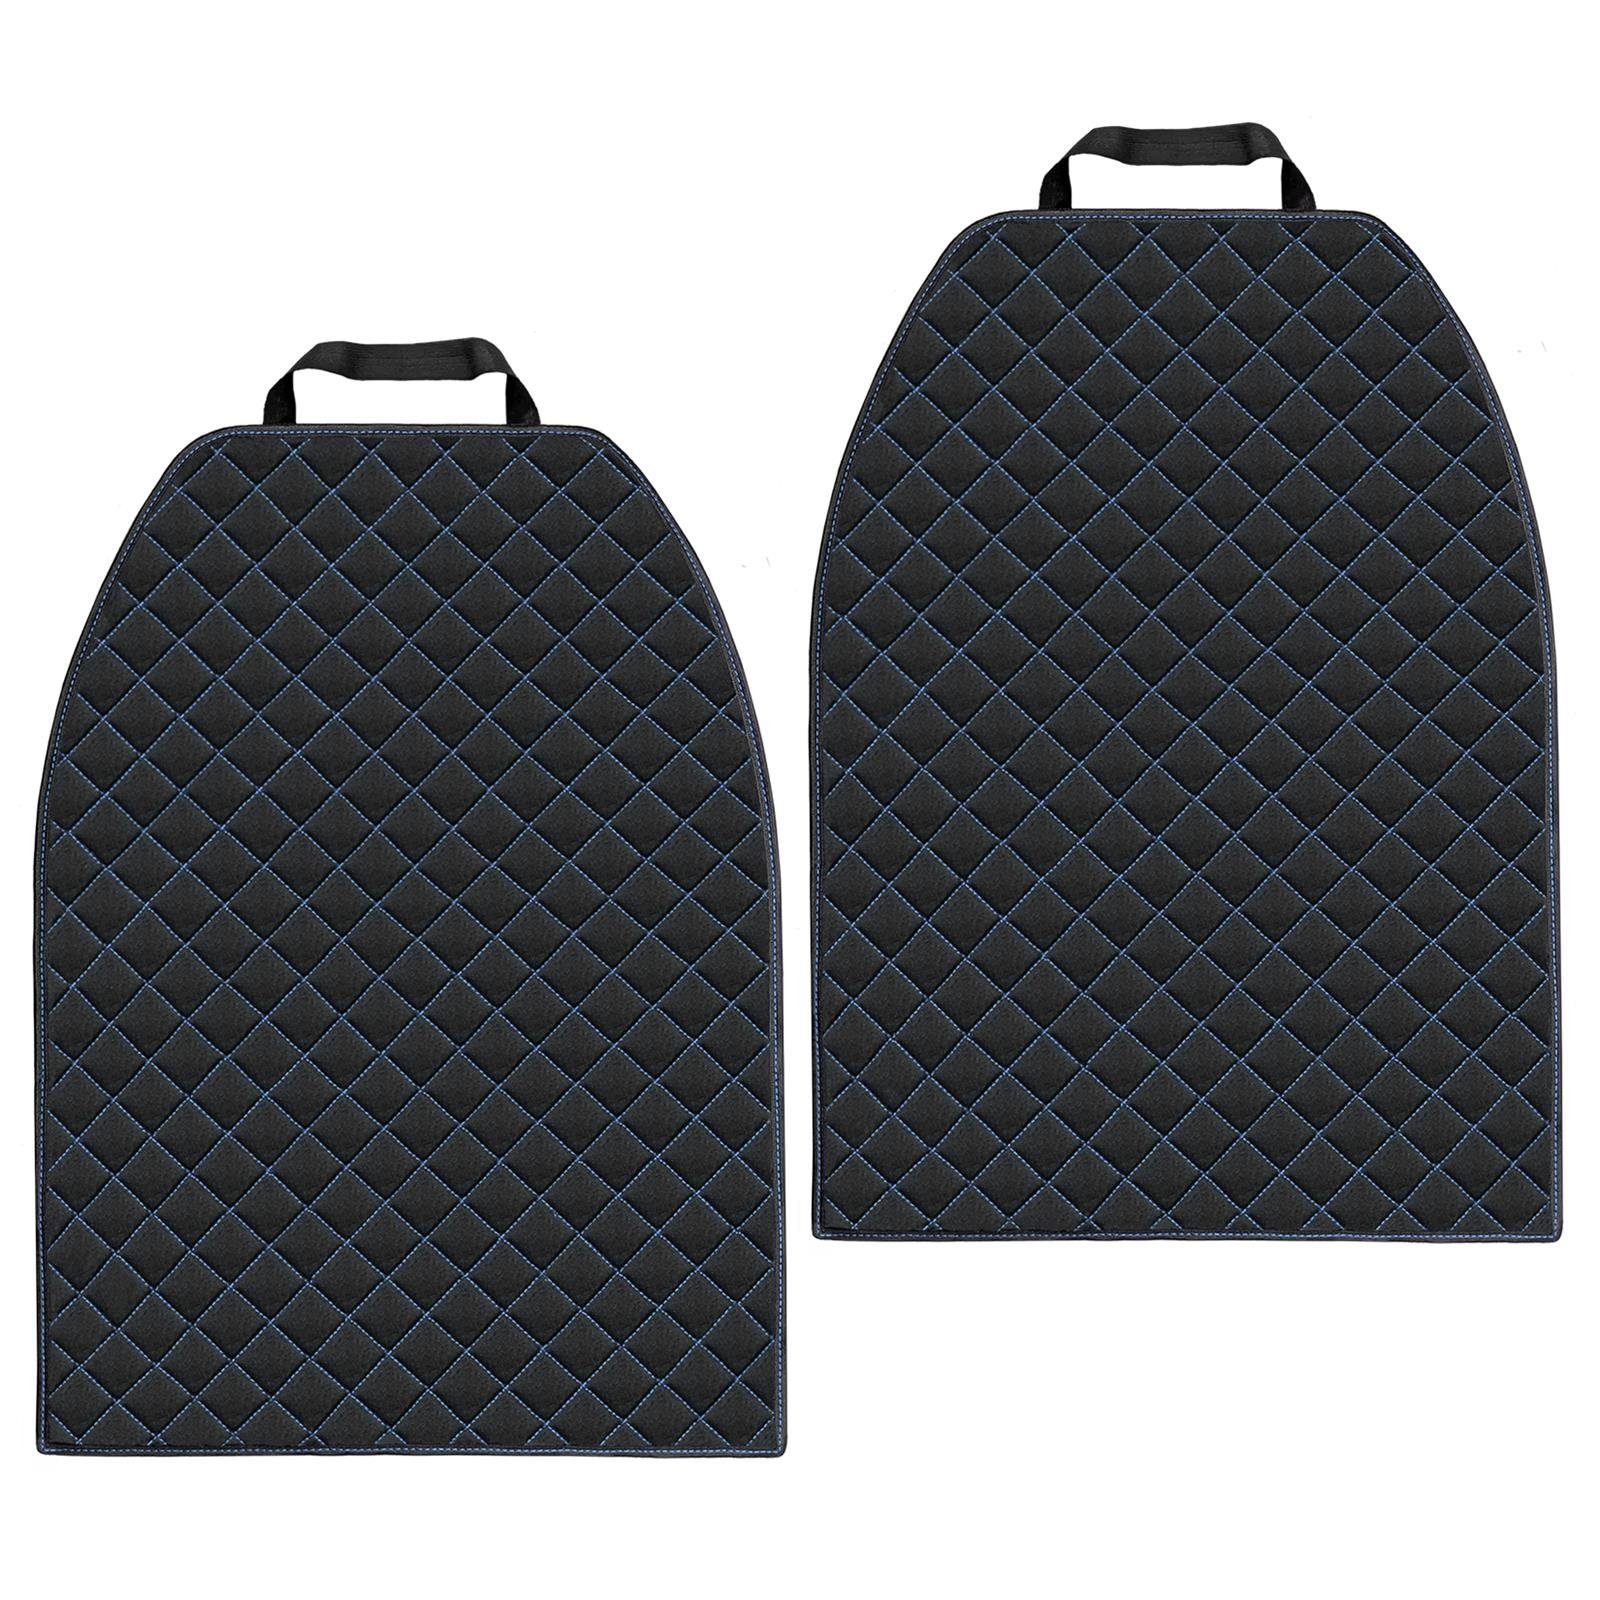 L & P Car Design Auto-Rückenlehnenschutz Rückenlehnenschoner aus Cordura Material Sitzschoner, 2 Stück Schwarz-Blau